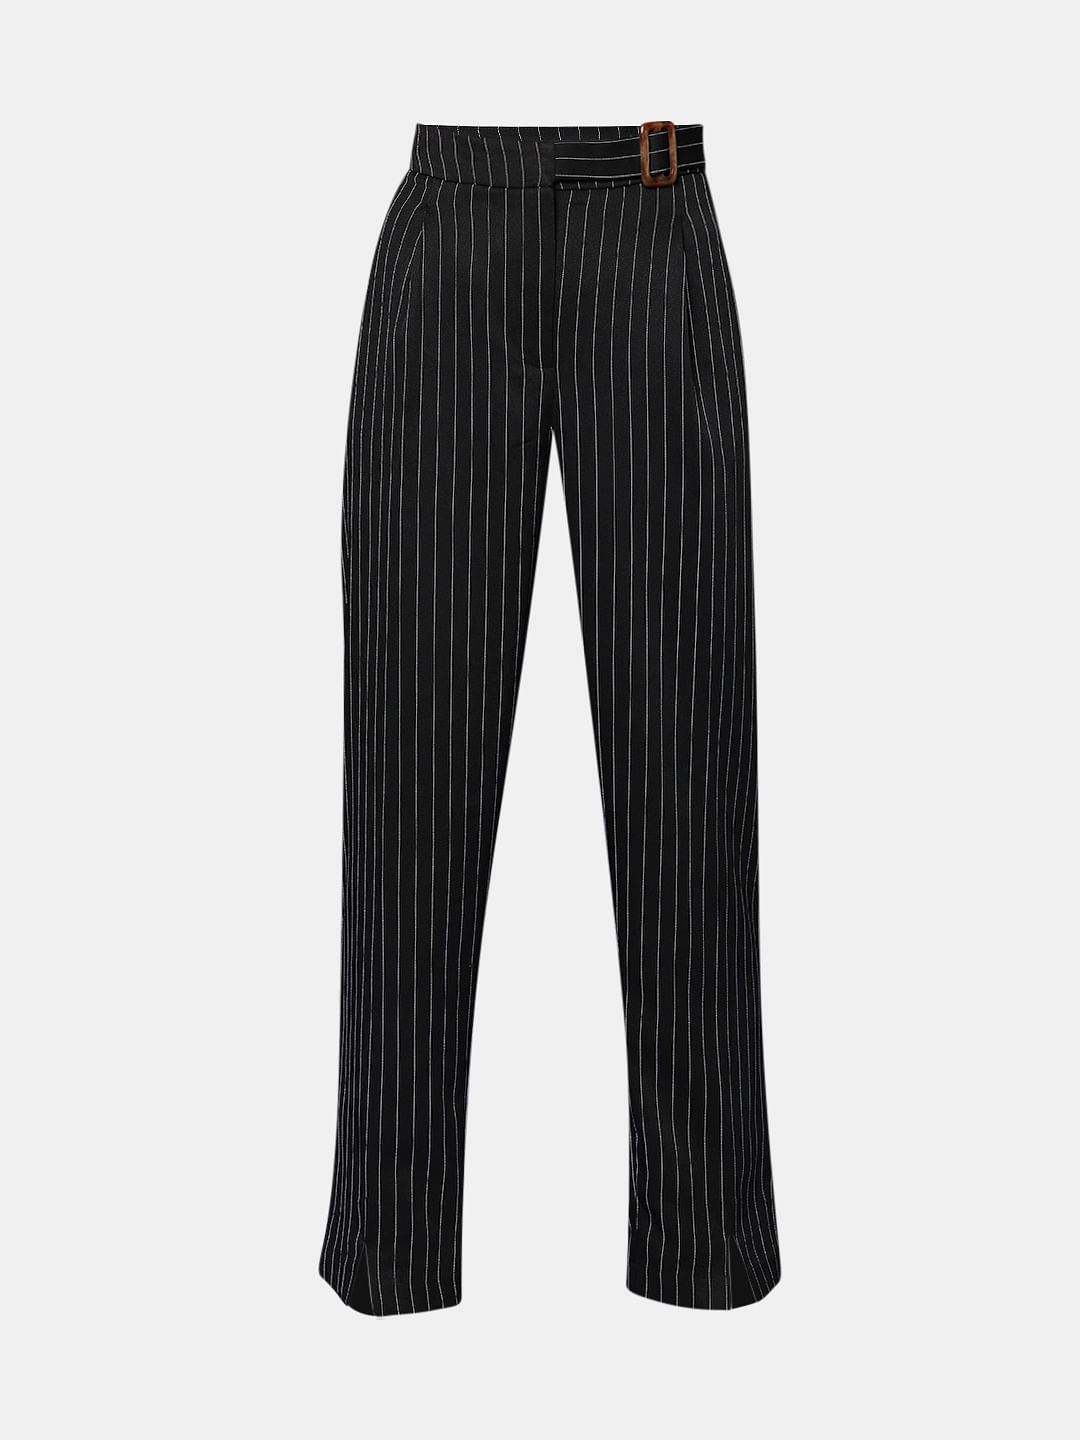 Monochrome Striped Wide Leg Pants with Belt  Spotstyl